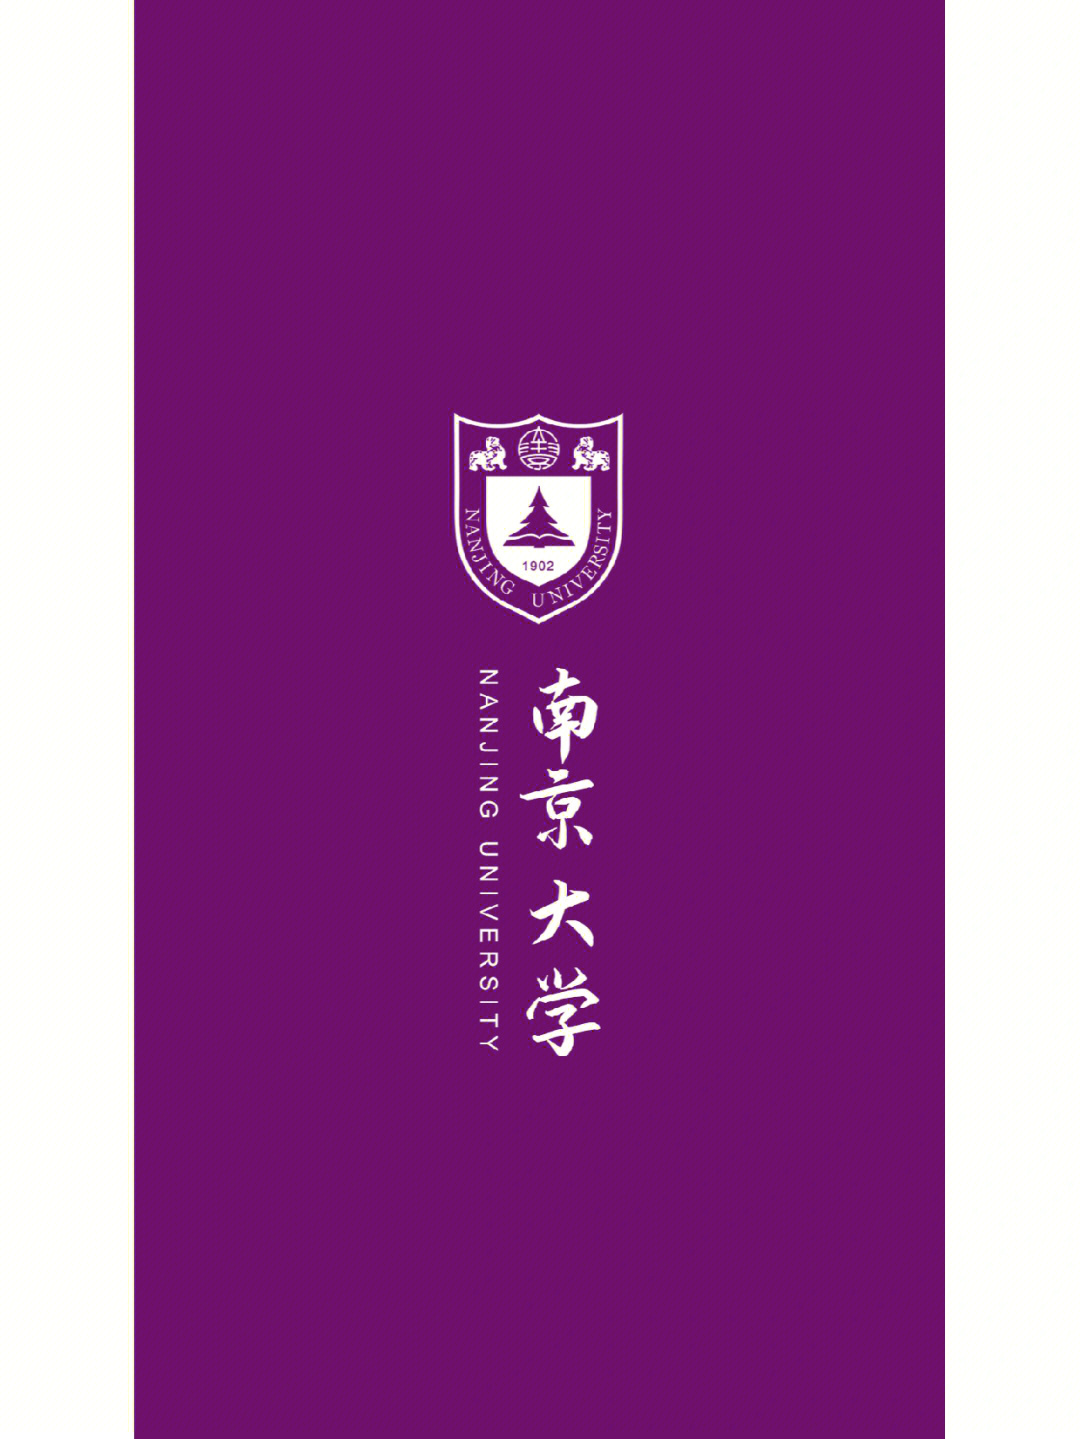 情校壁纸十九弹南京大学高贵紫